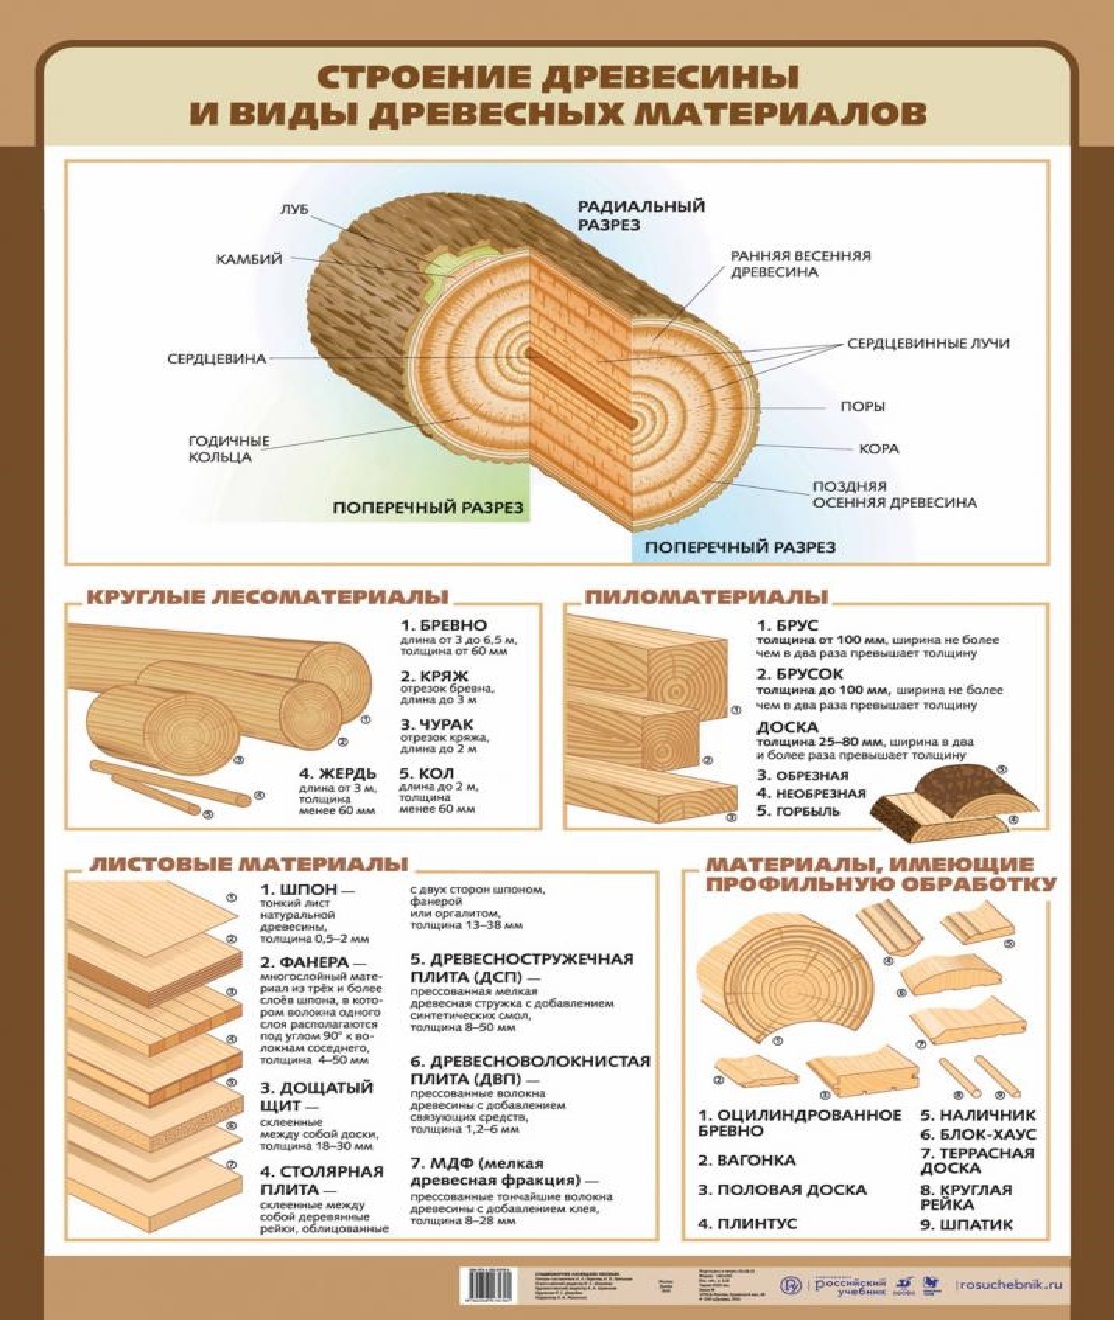 Строение древесины и породы древесины